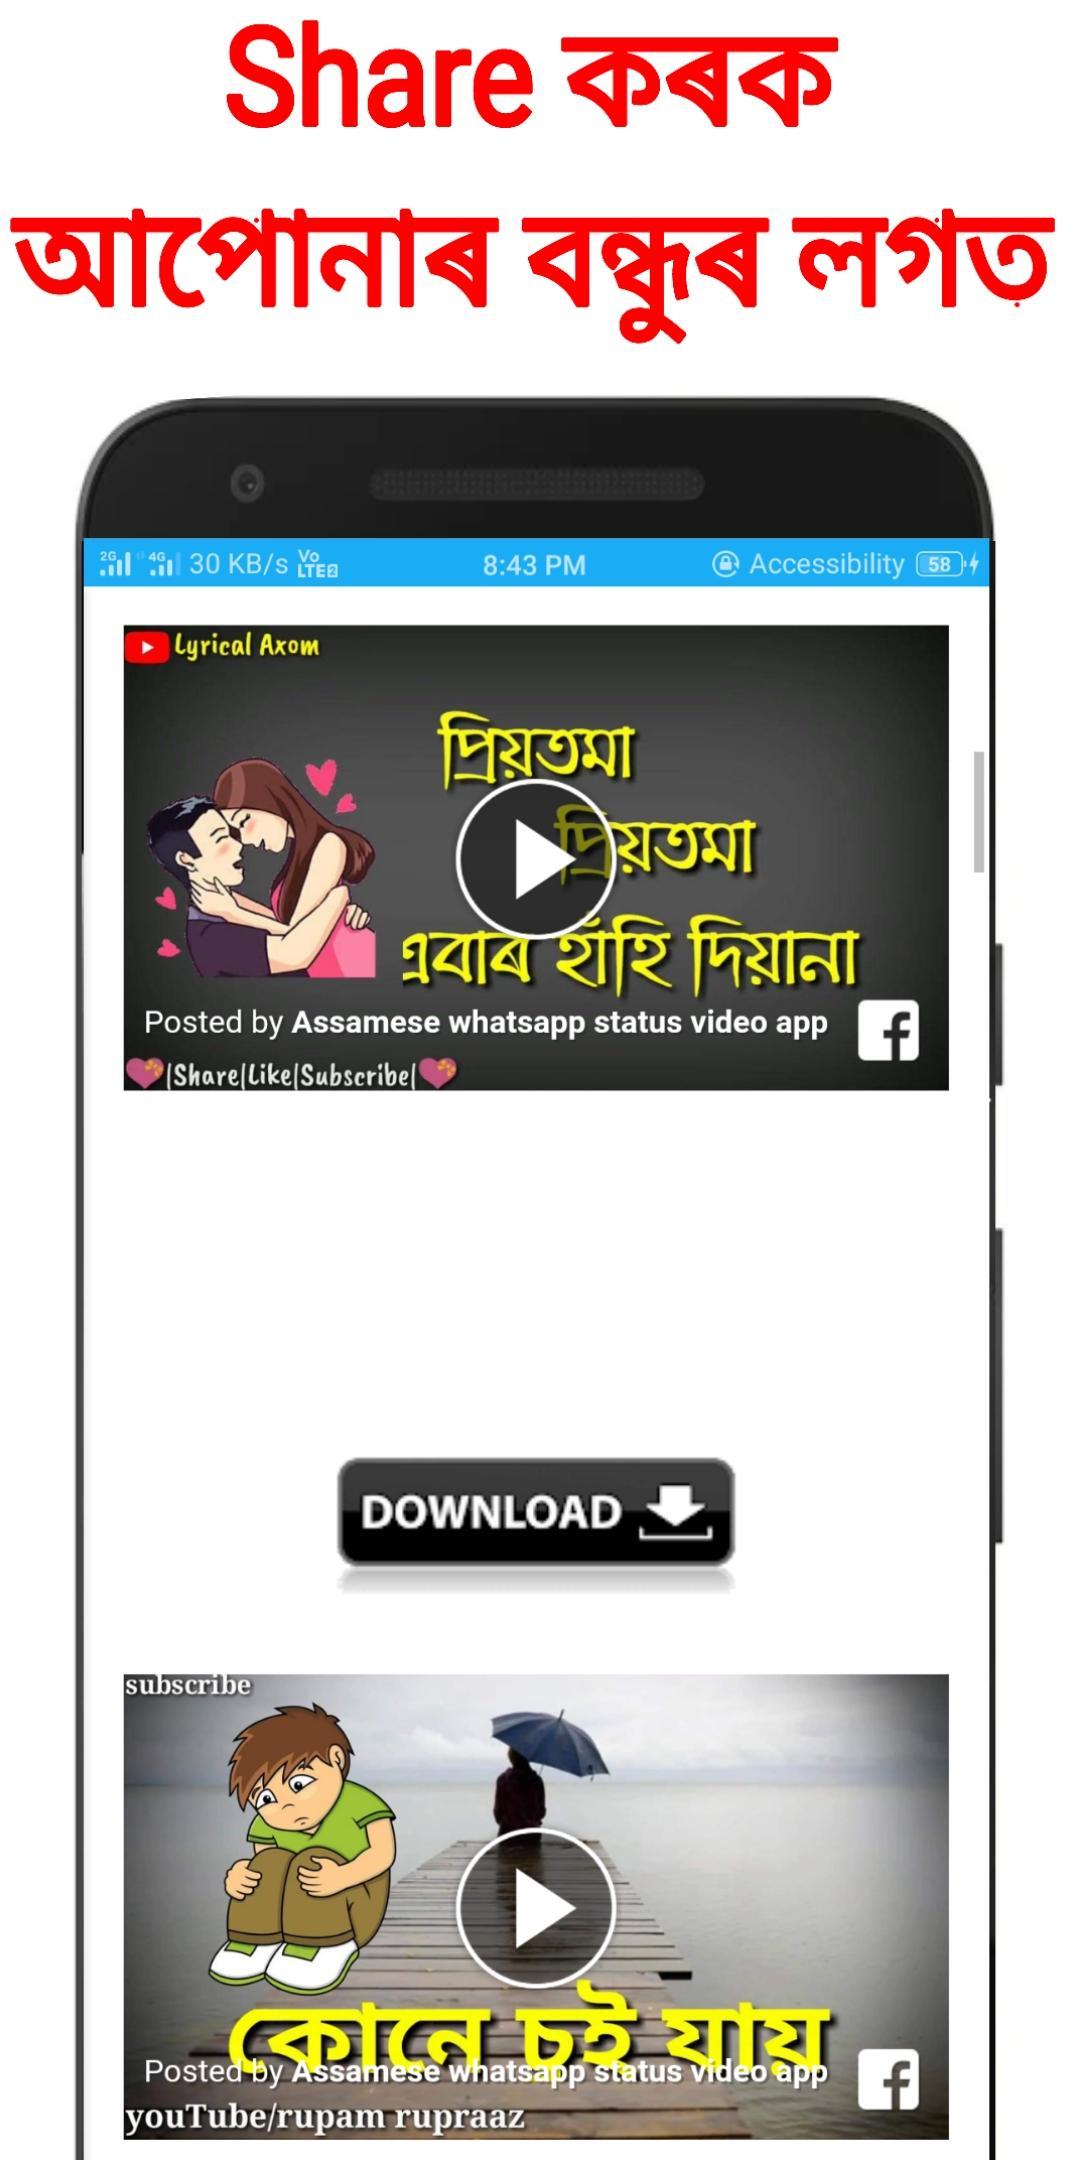 Assamese Funny Whatsapp Status Image - bio para whatsapp